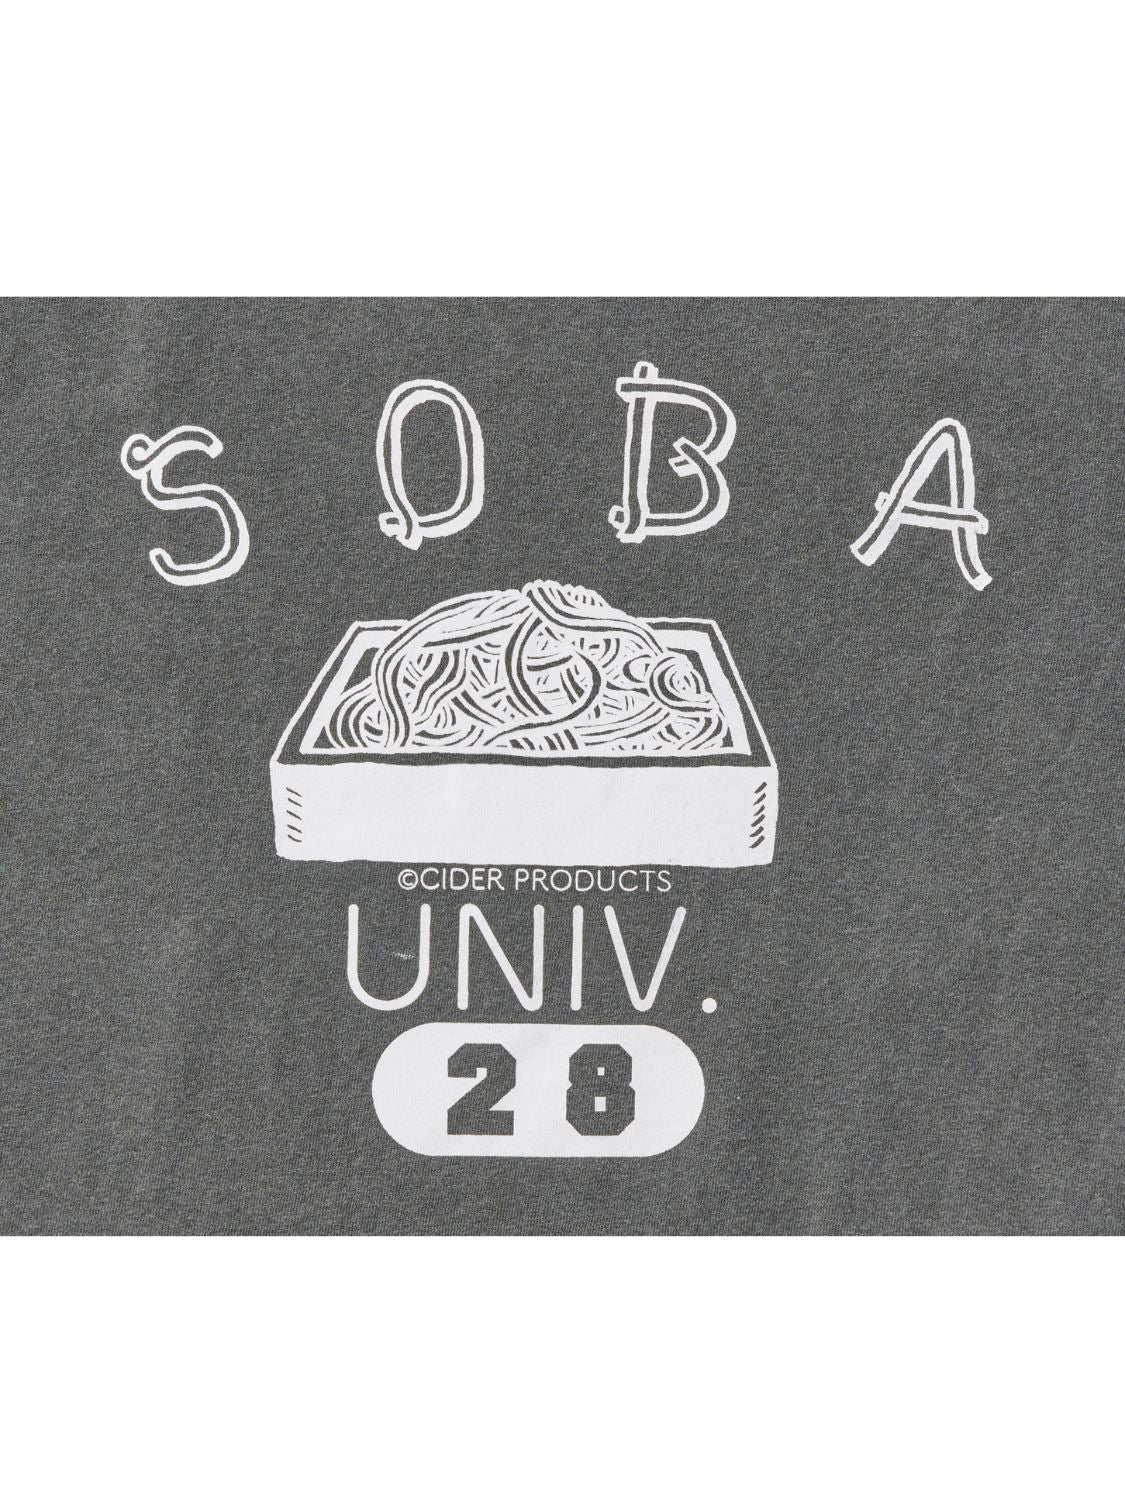 SOBA UNIV. Tshirt / グレー